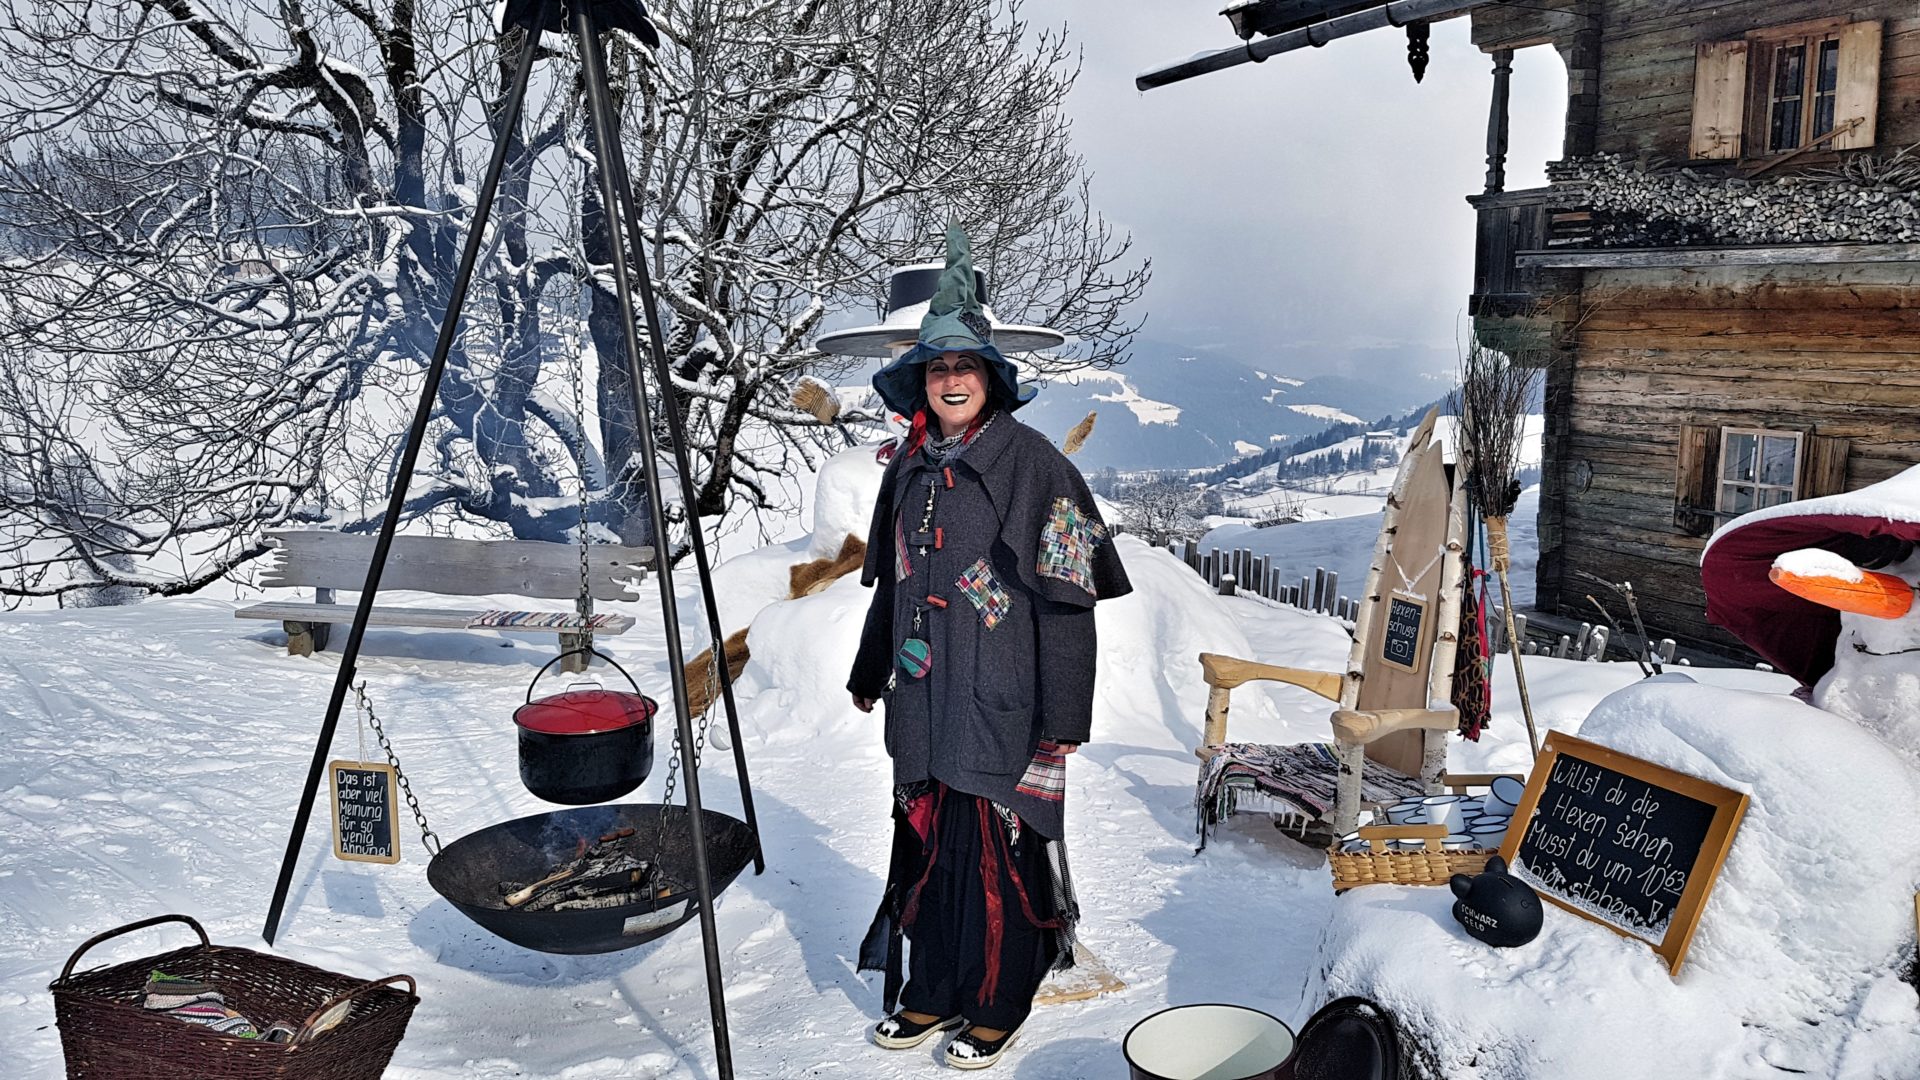 Tee mit den Hexen der SkiWelt in Tirol, Österreich